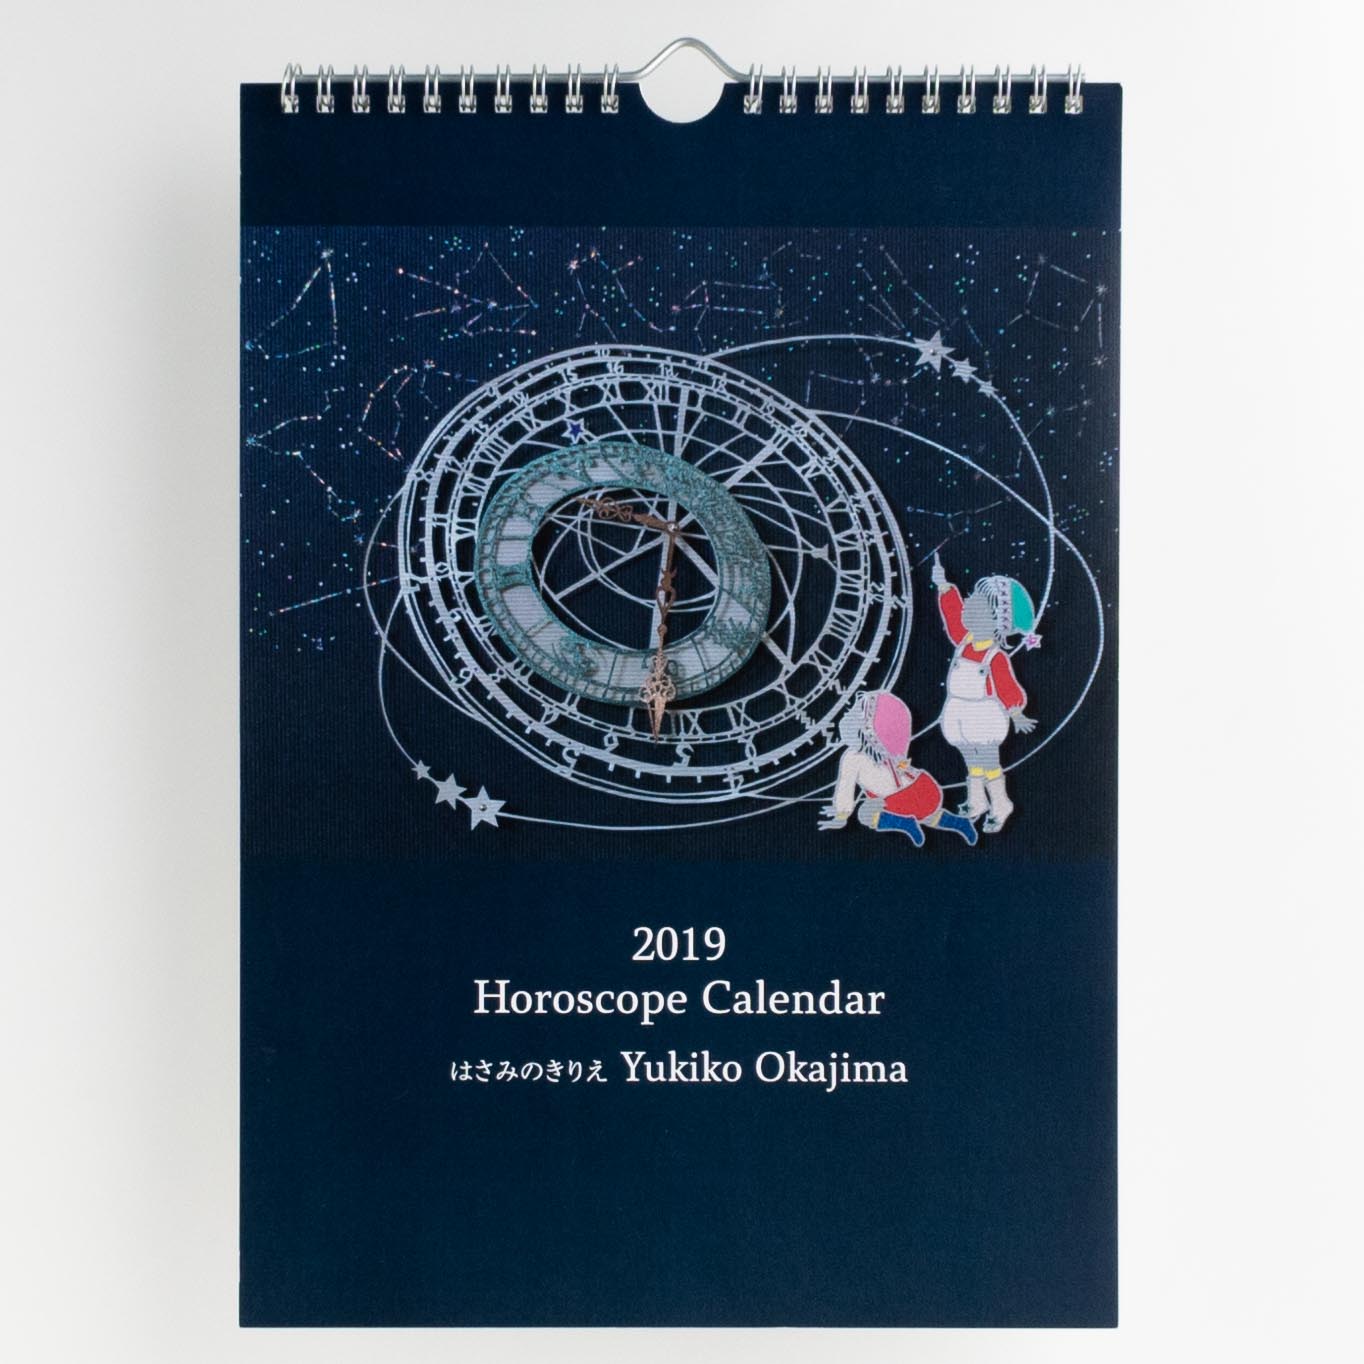 「岡島　由紀子 様」製作のオリジナルカレンダー